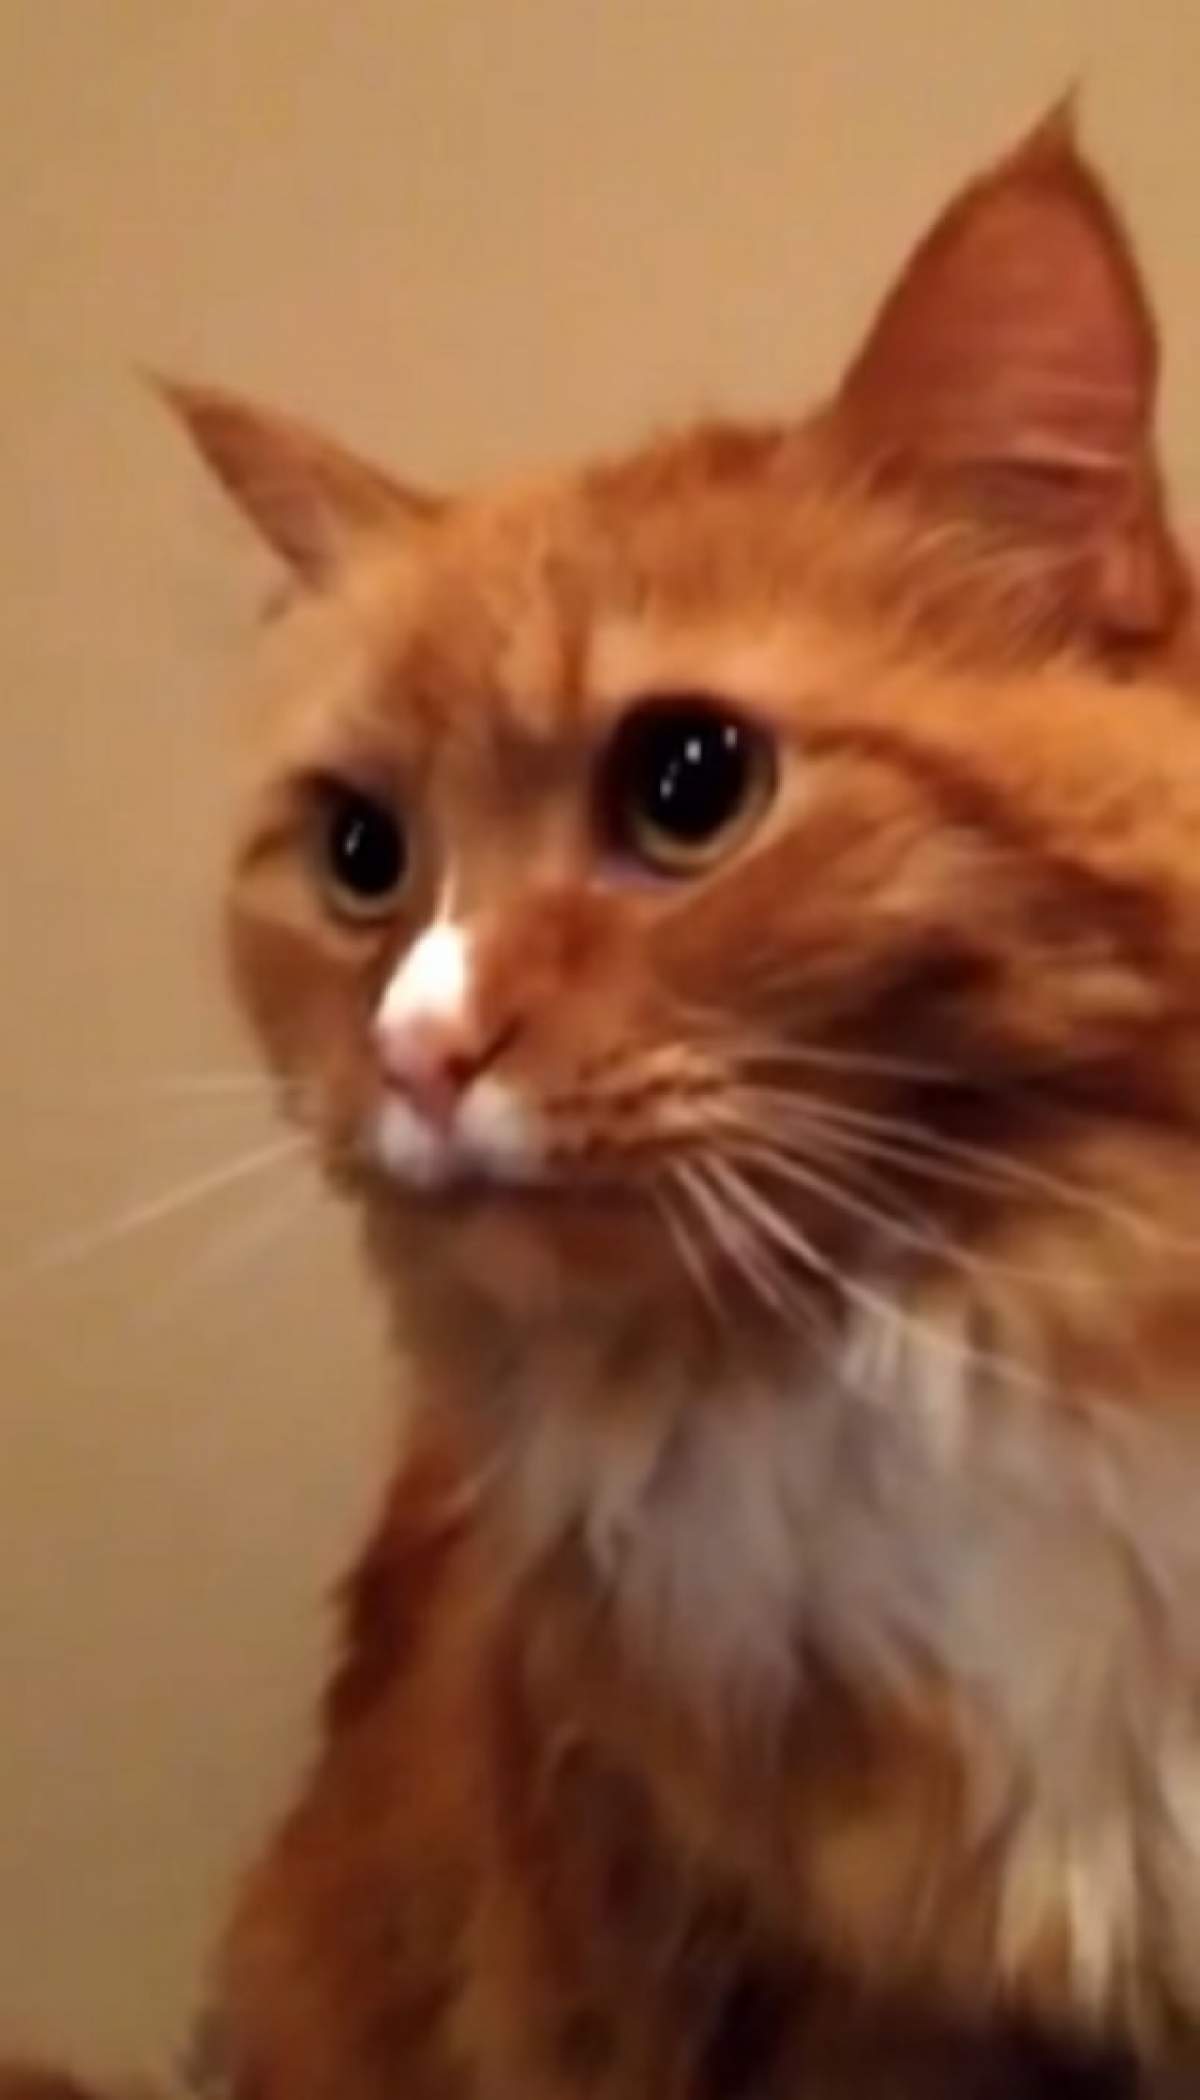 VIDEO / Reacţia incredibilă a acestei pisici în momentul în care aude cum se dezlipeşte banda adezivă